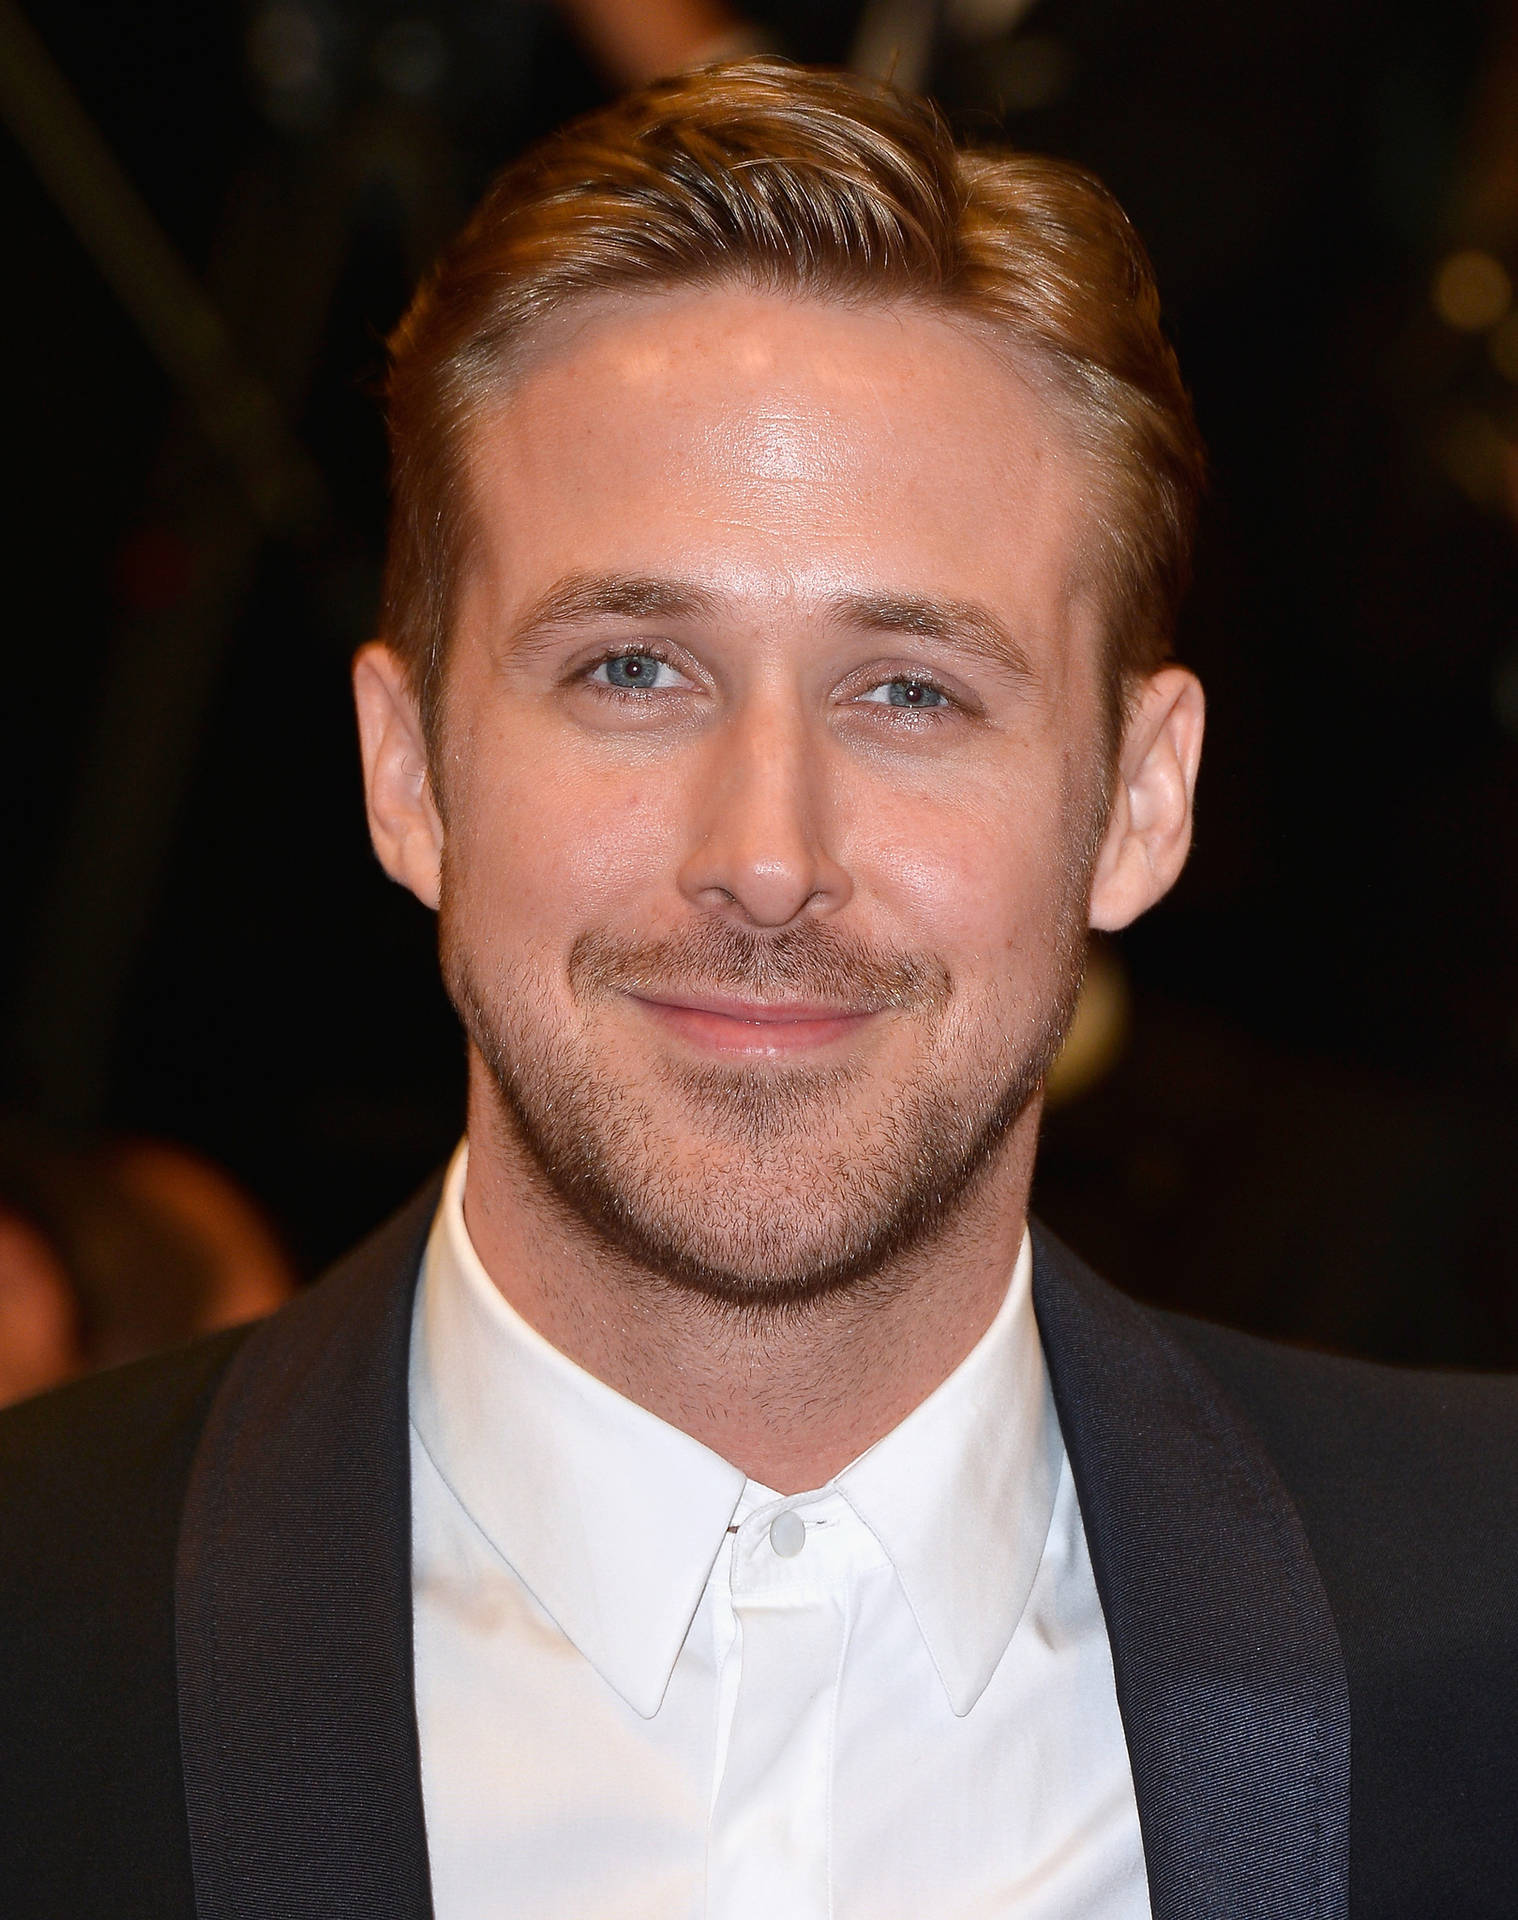 Smiling Ryan Gosling Background